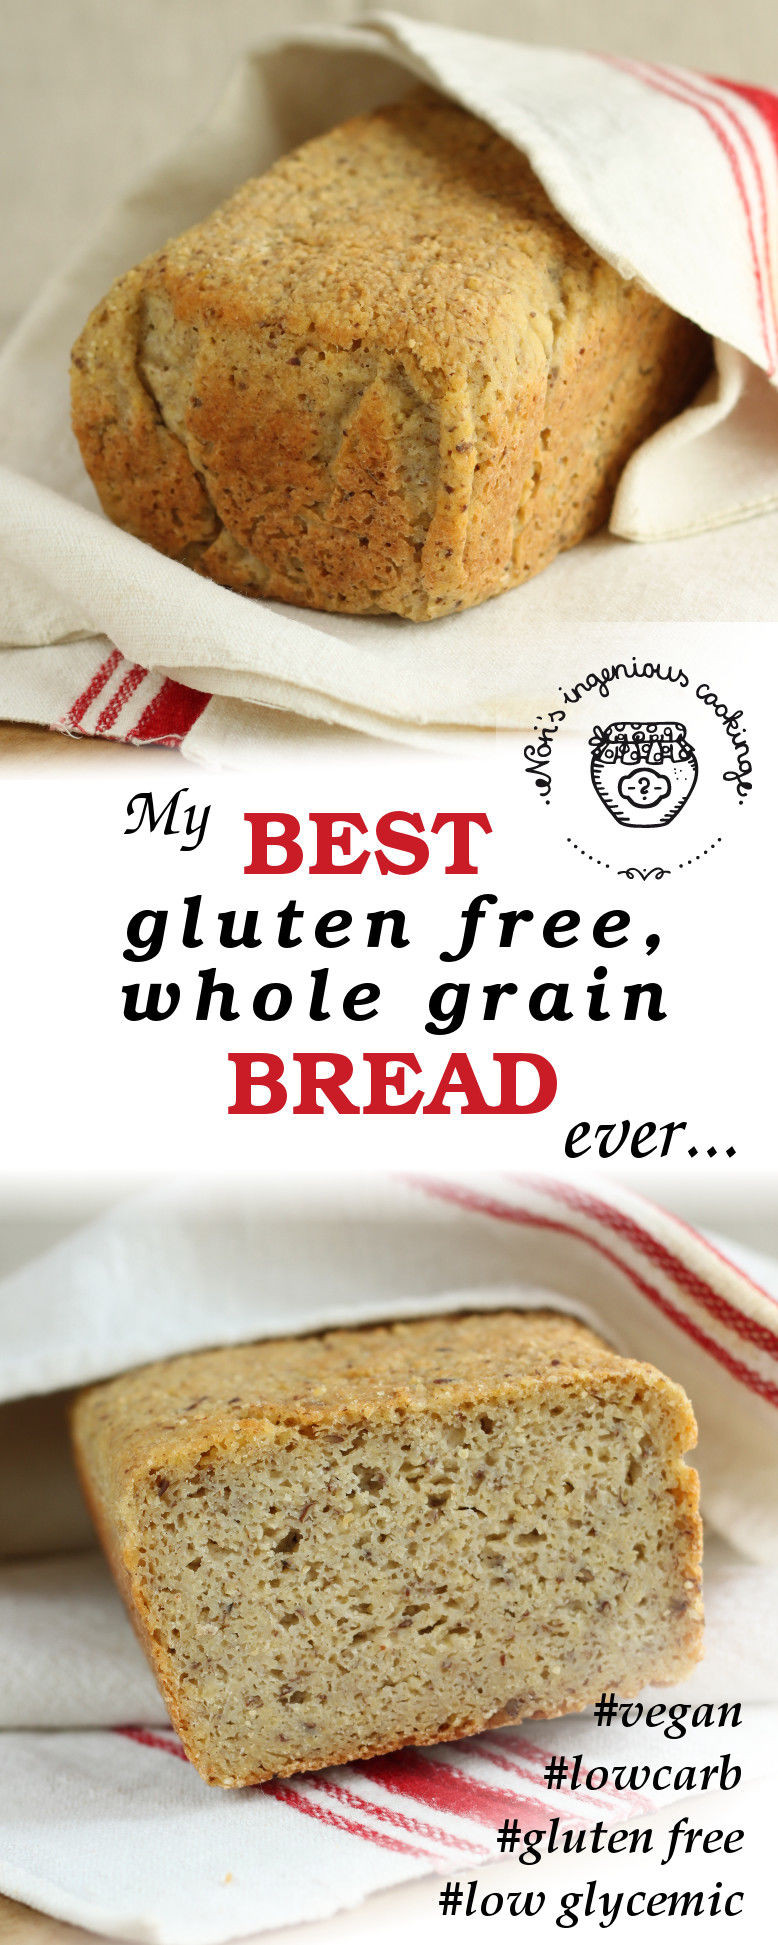 Udi'S Gluten Free Whole Grain Bread
 My best gluten free whole grain bread ever vegan